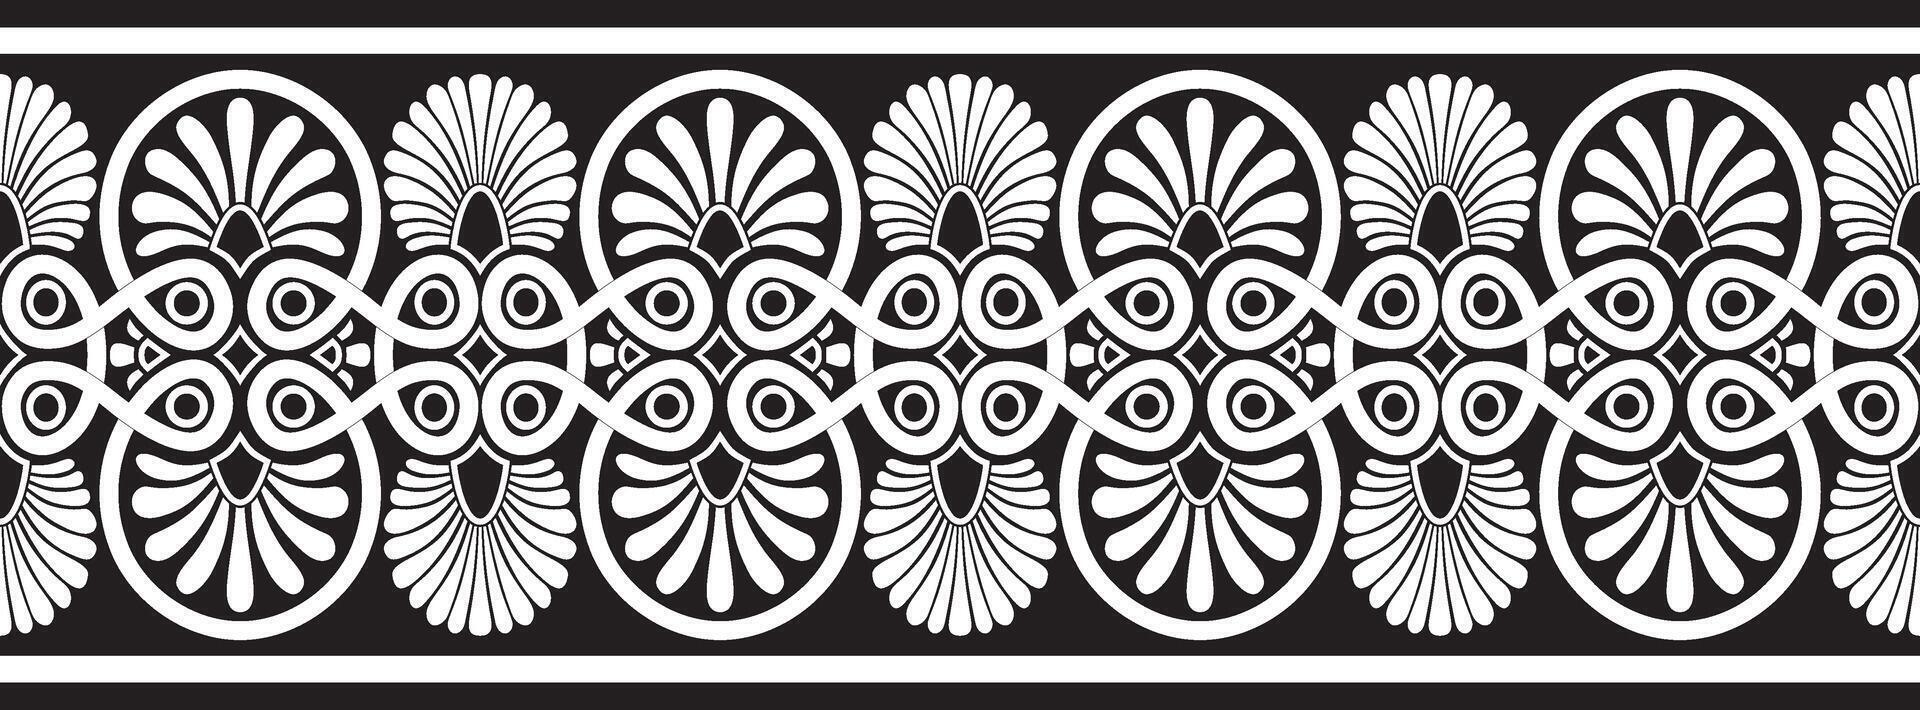 schwarz einfarbig nahtlos Ornament von uralt Griechenland. klassisch endlos Muster Rahmen Rand römisch Reich. vektor